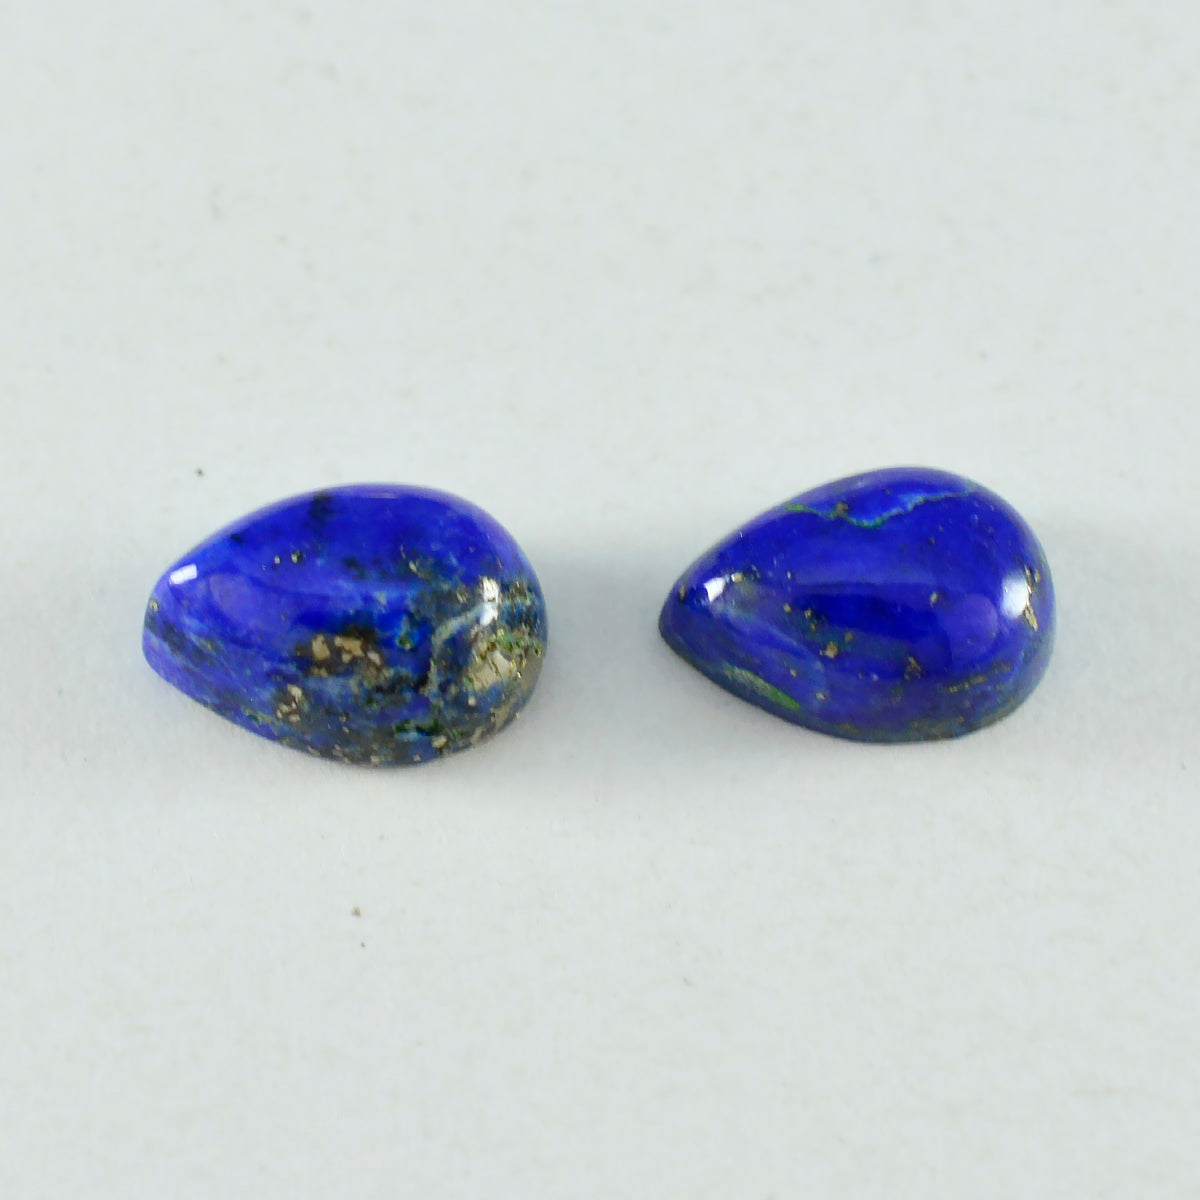 Riyogems 1 Stück blauer Lapislazuli-Cabochon, 6 x 9 mm, Birnenform, A1-Qualität, lose Edelsteine